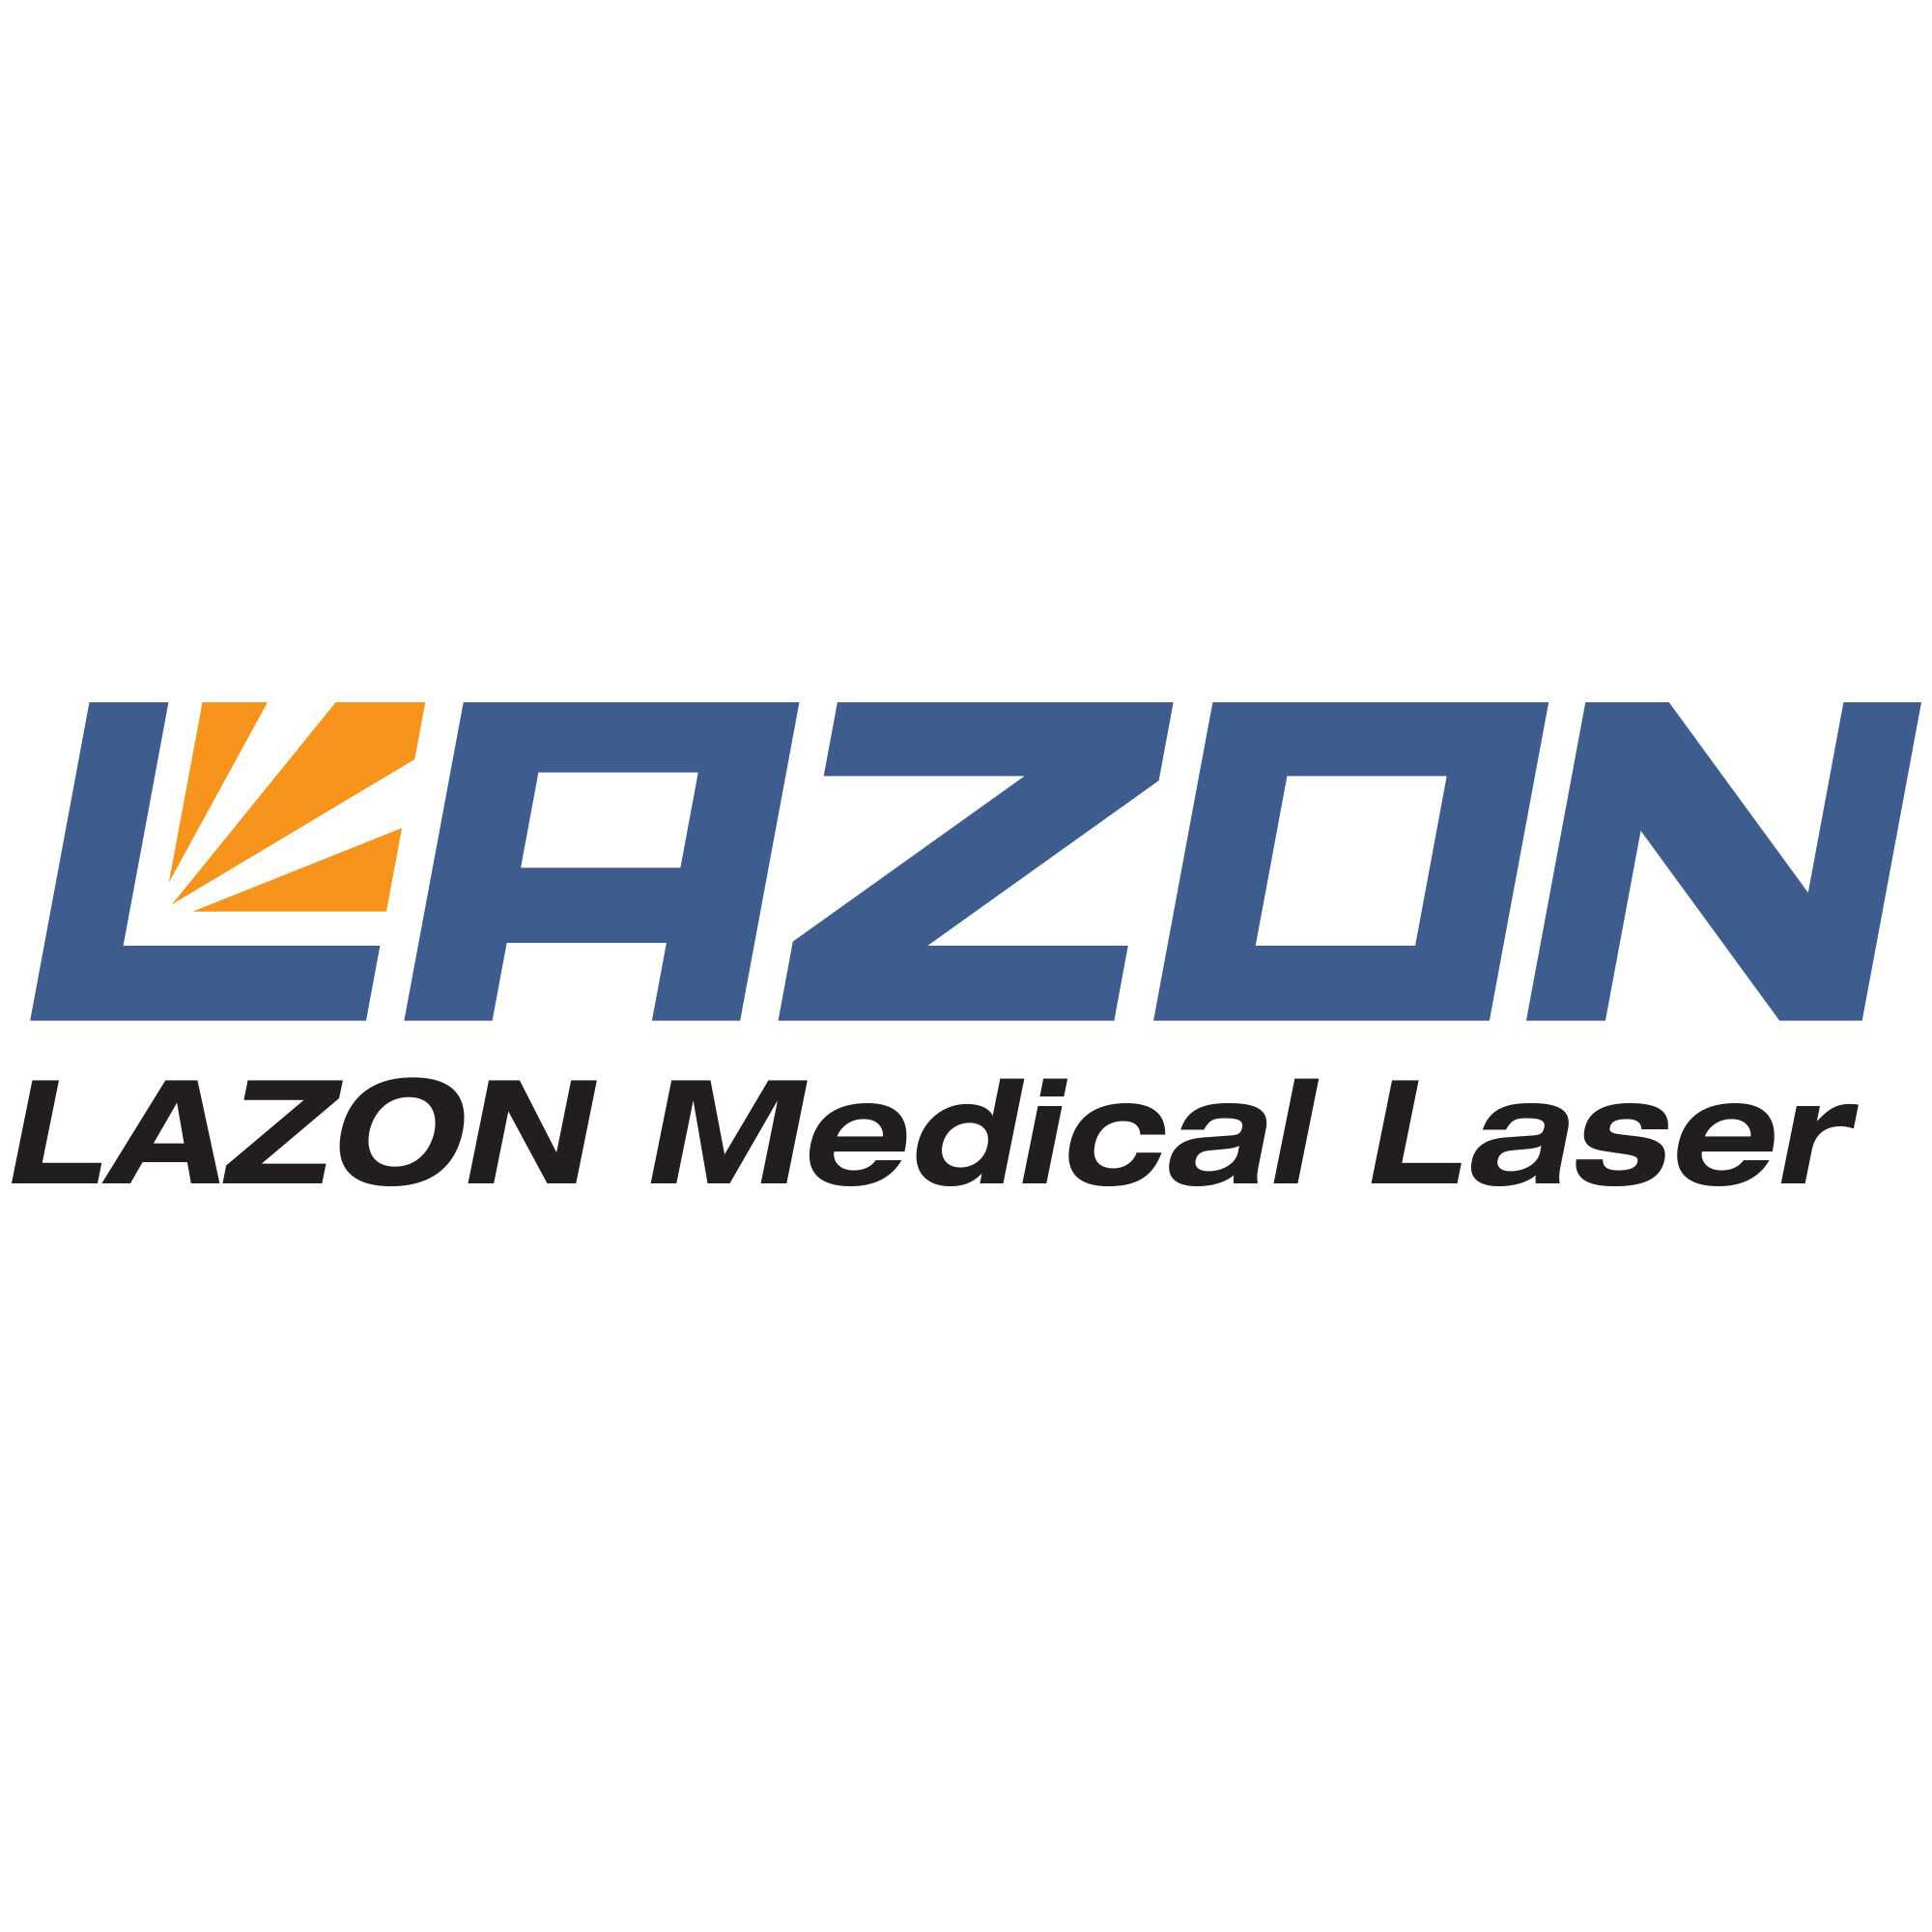 lazon medical laser Co., Ltd.